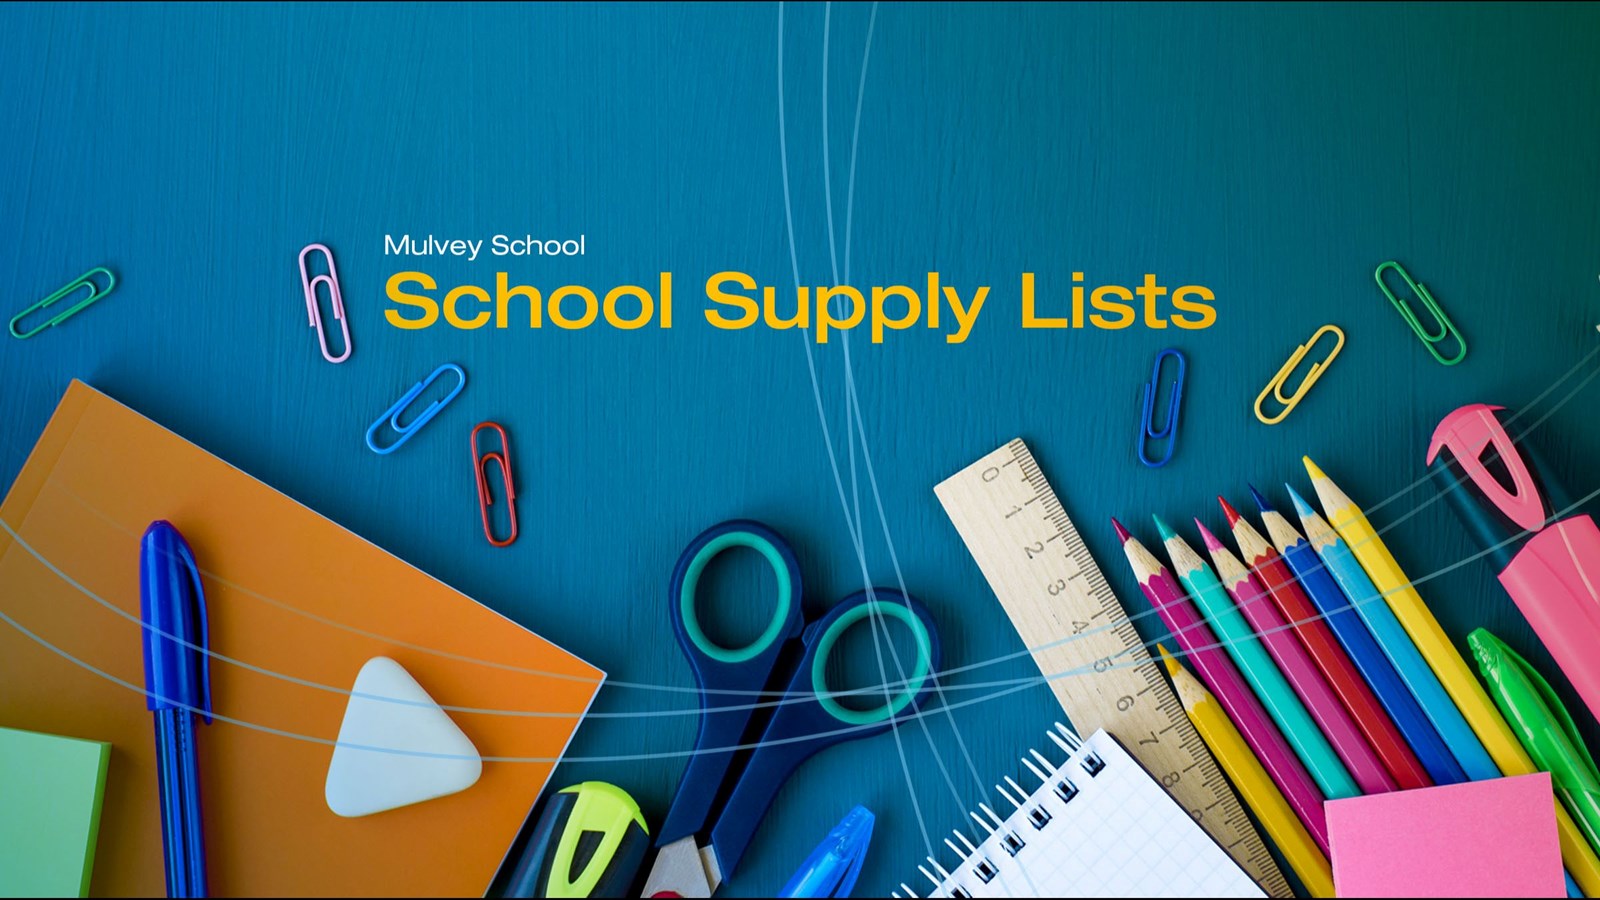 School Supplies 2022-23